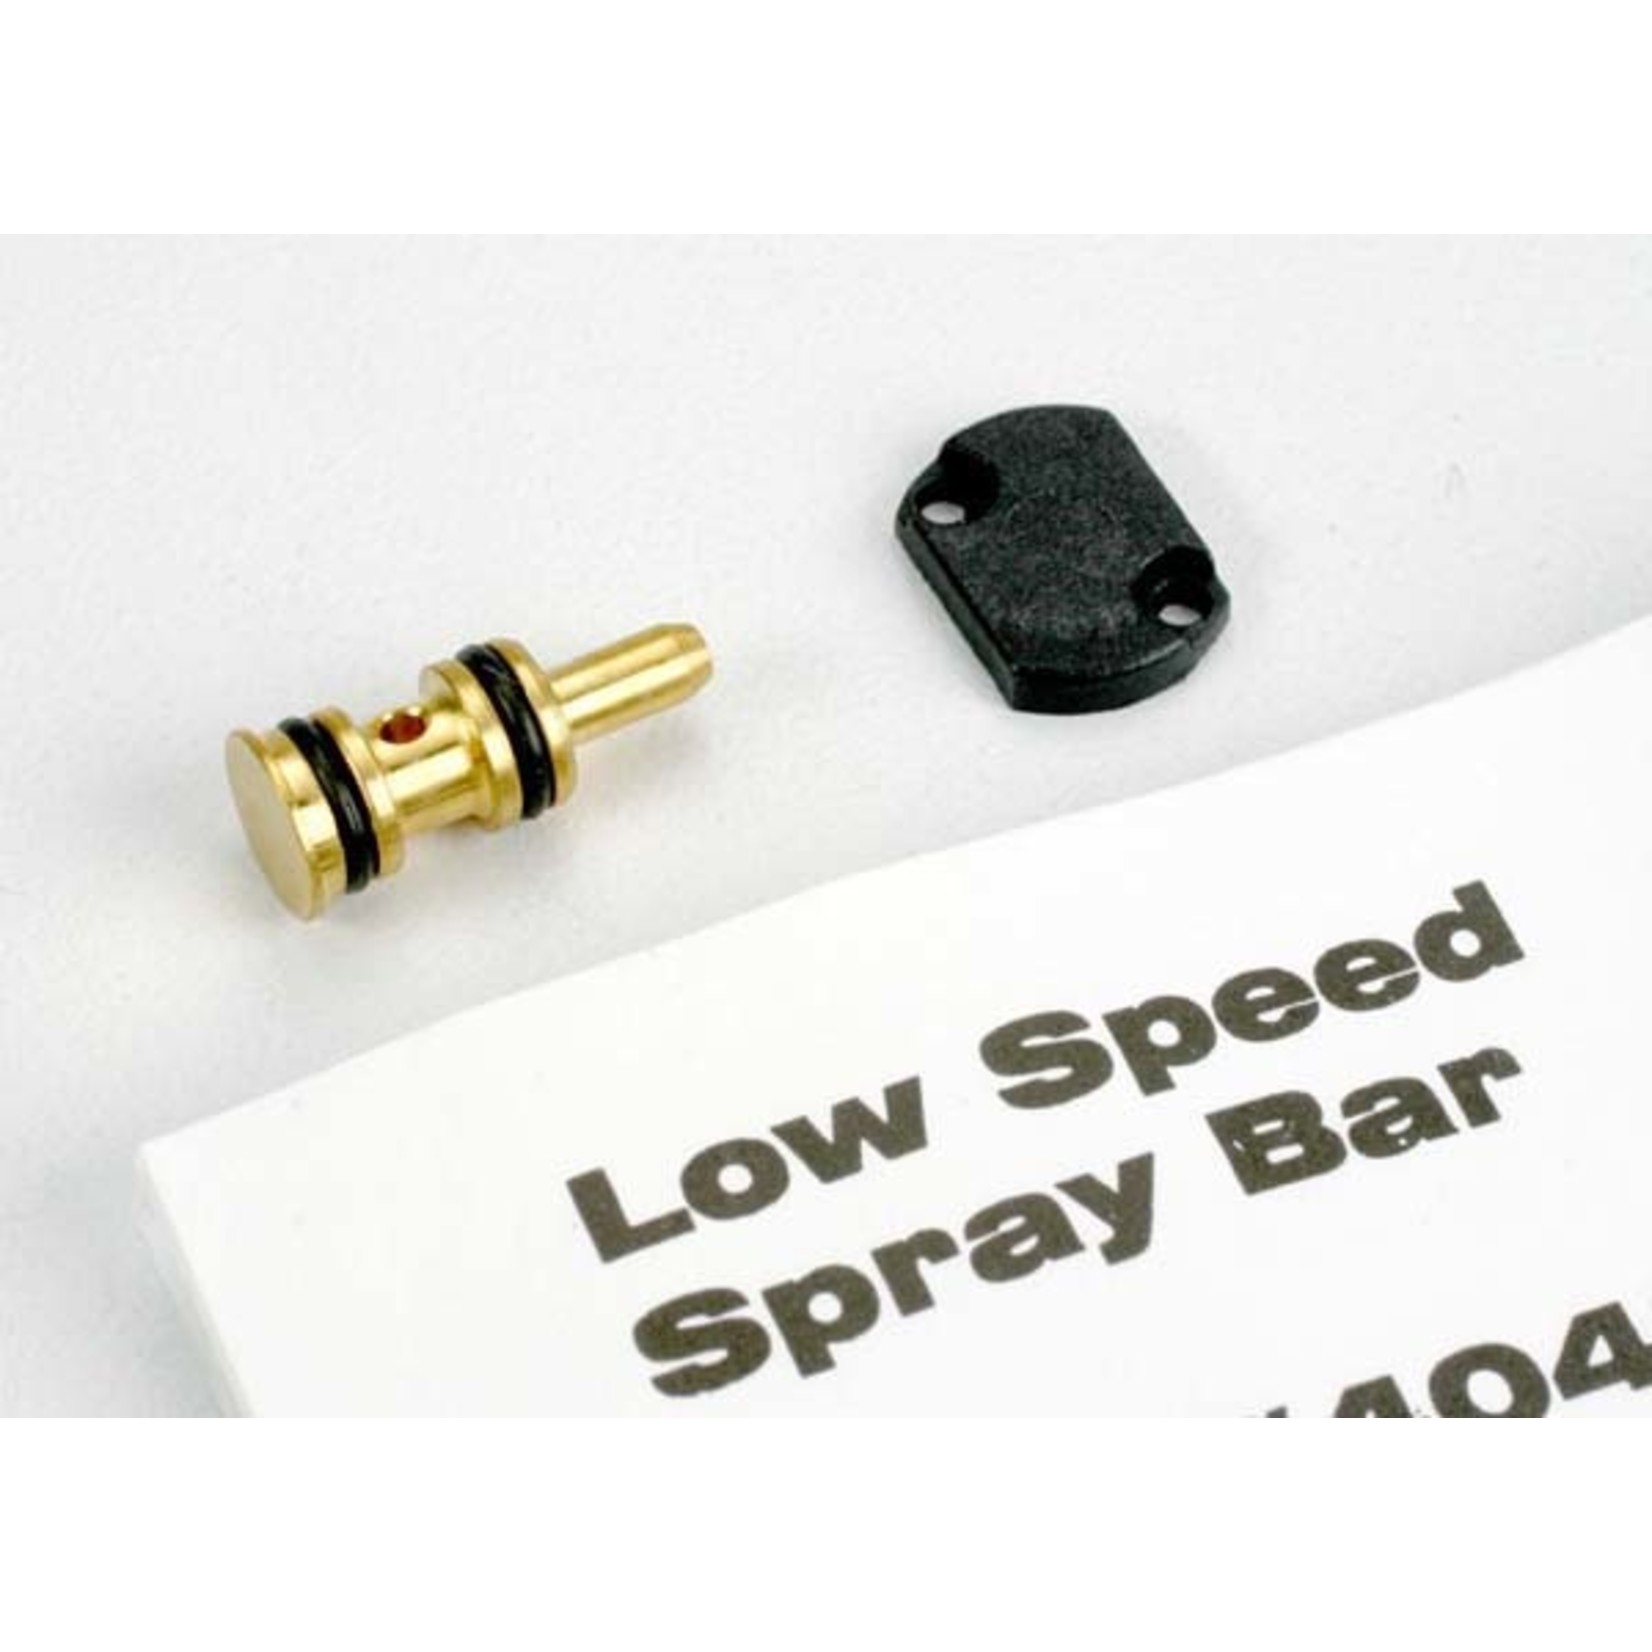 Traxxas 4048 - Low-speed spray bar